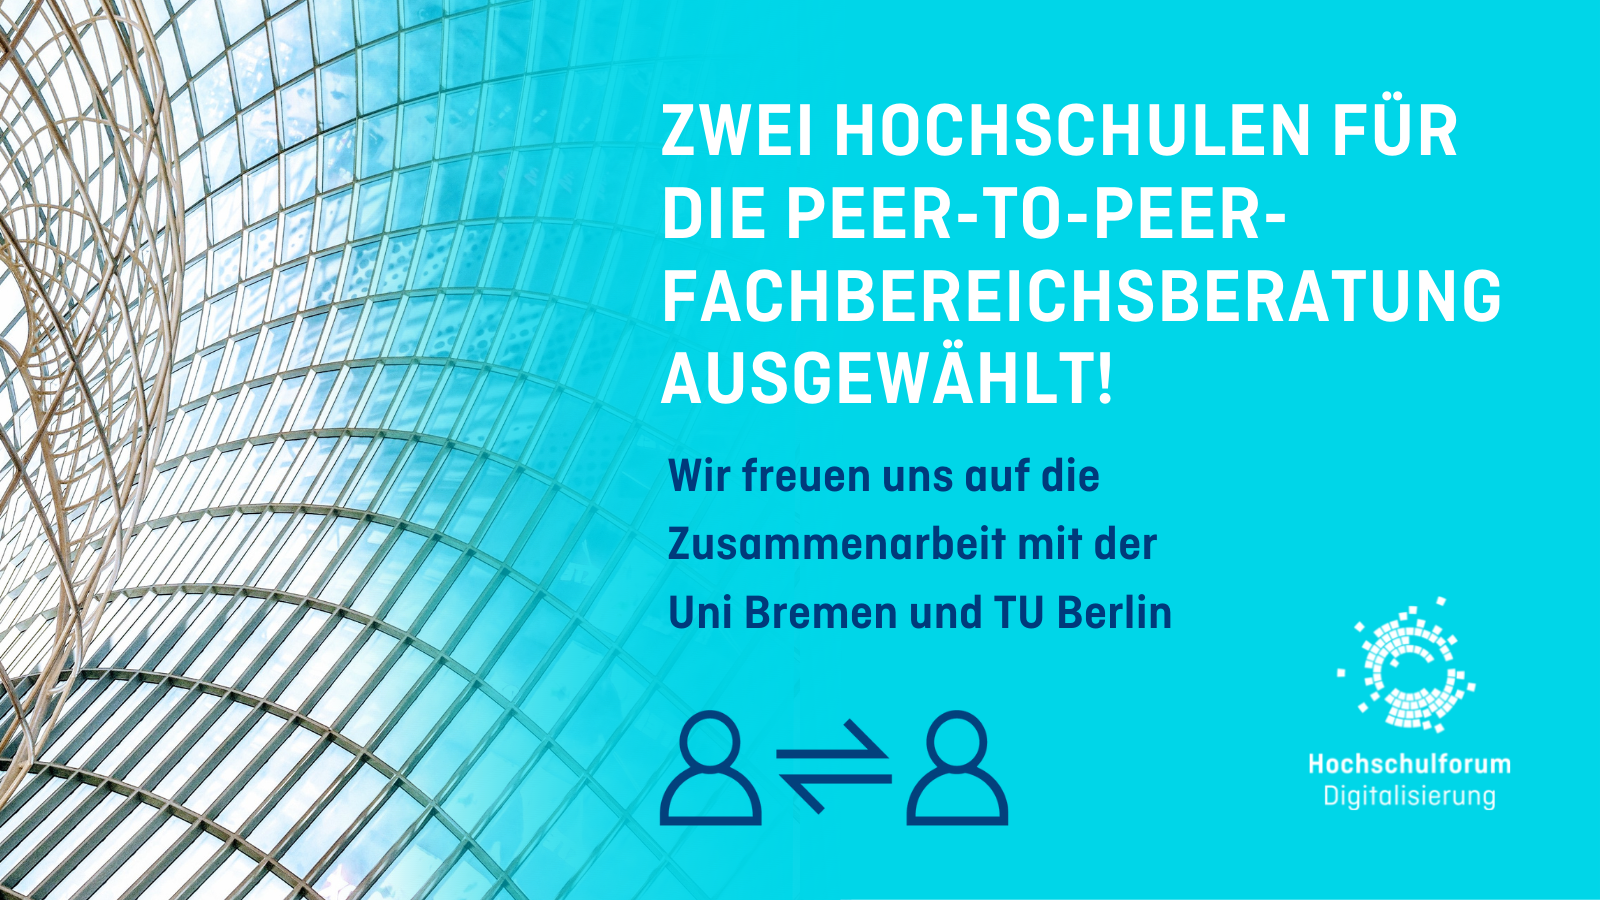 TU Berlin und Uni Bremen für Peer-to-Peer-Fachbereichsberatung ausgewählt